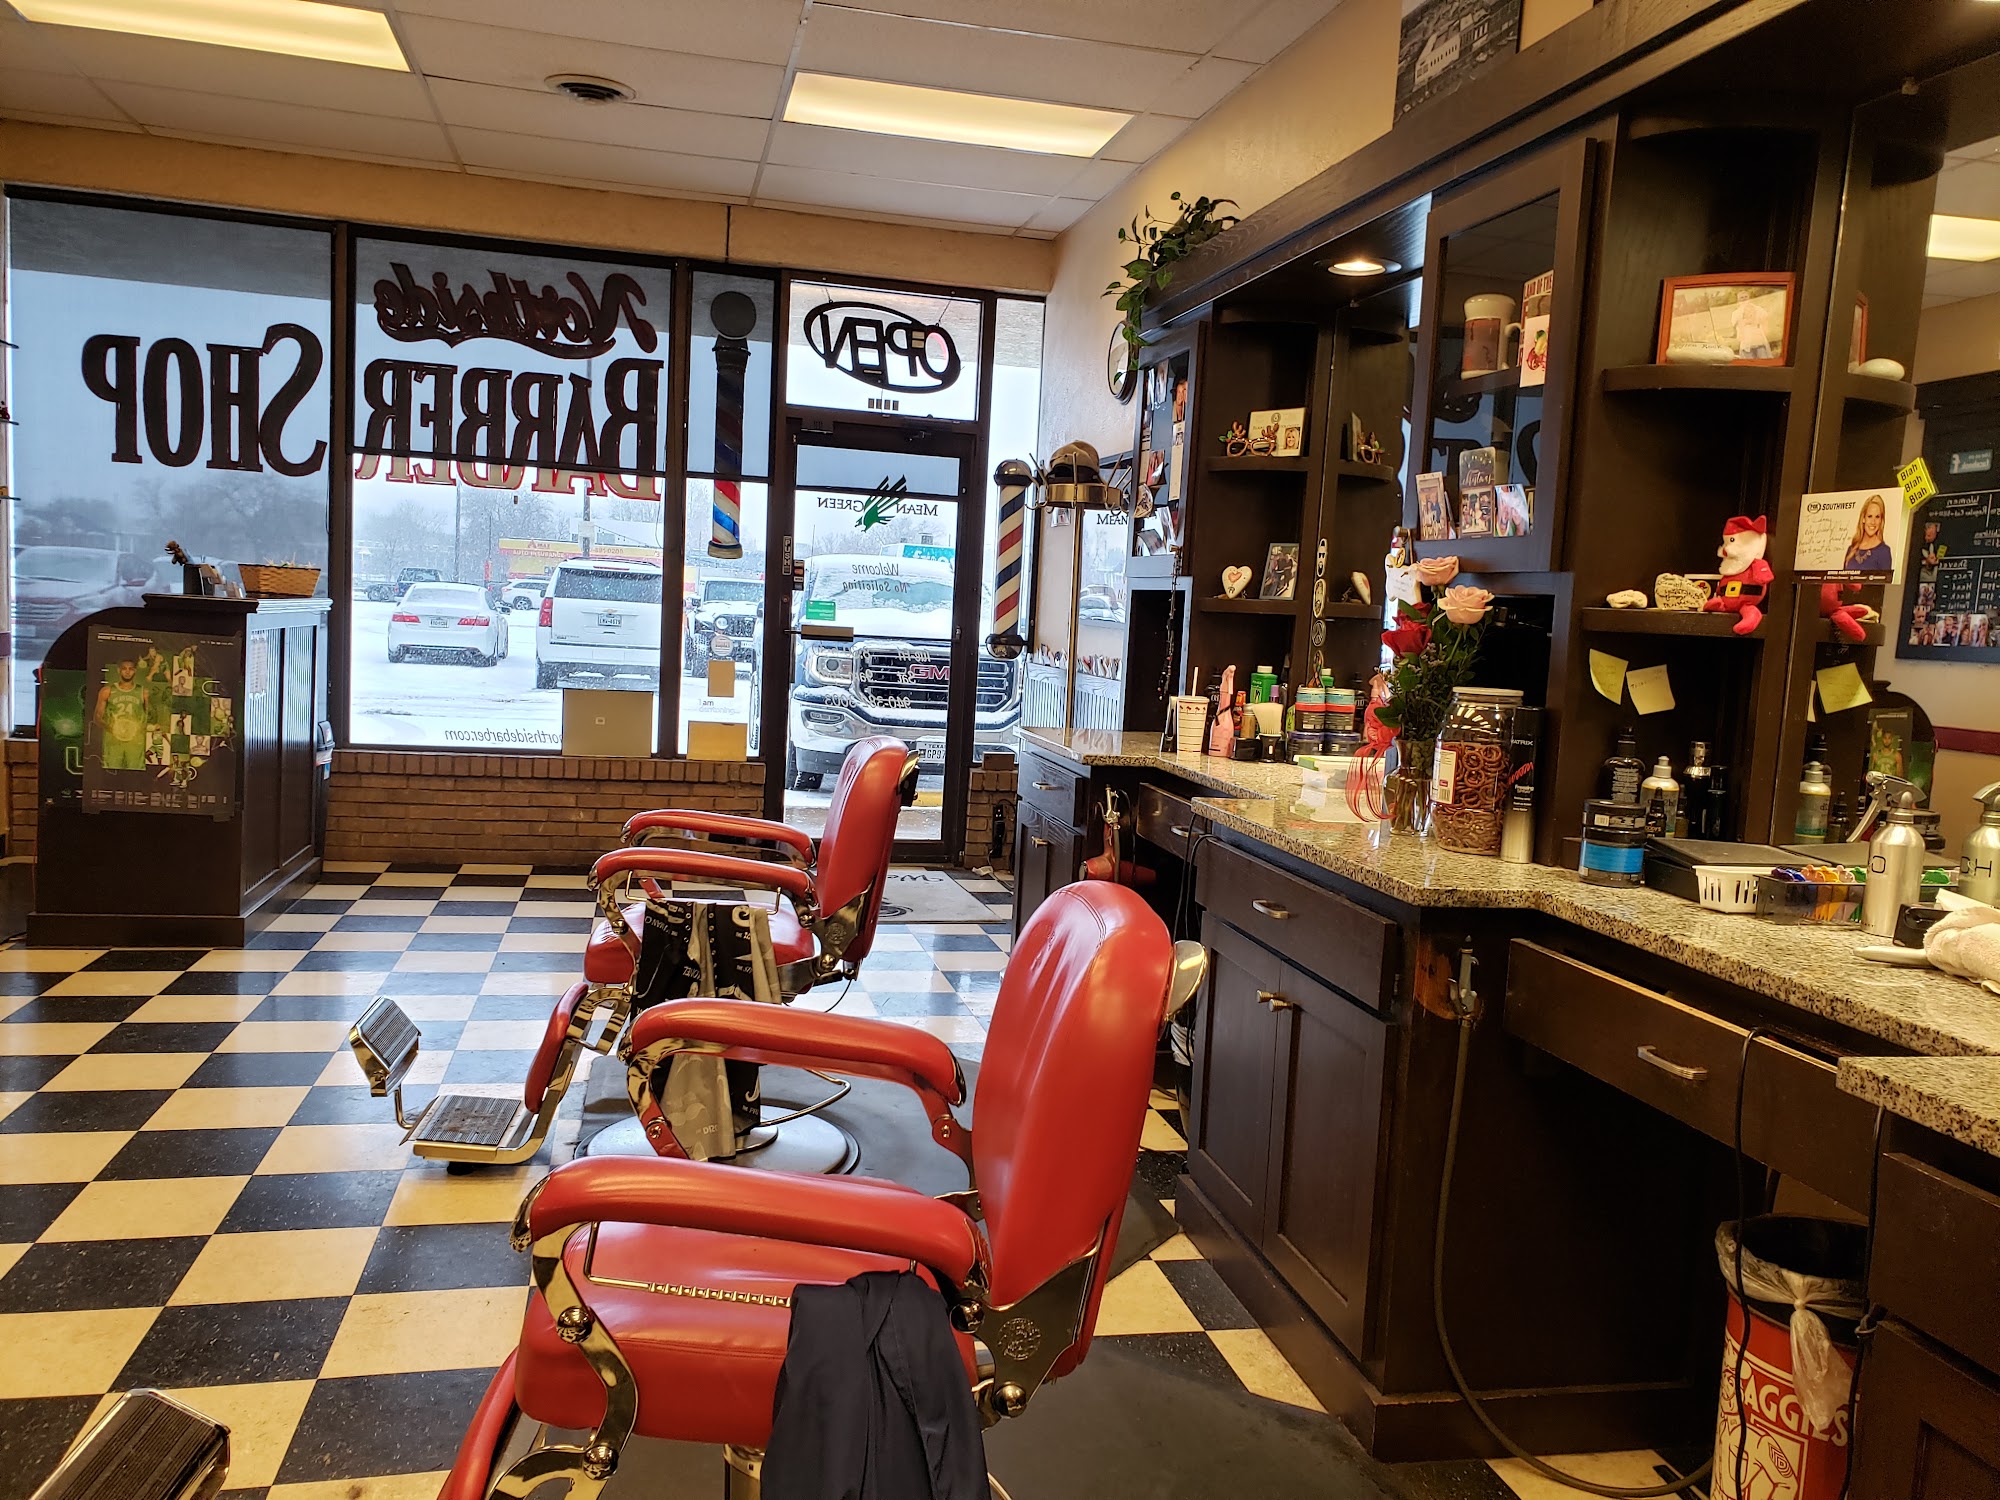 Northside Barber Shop